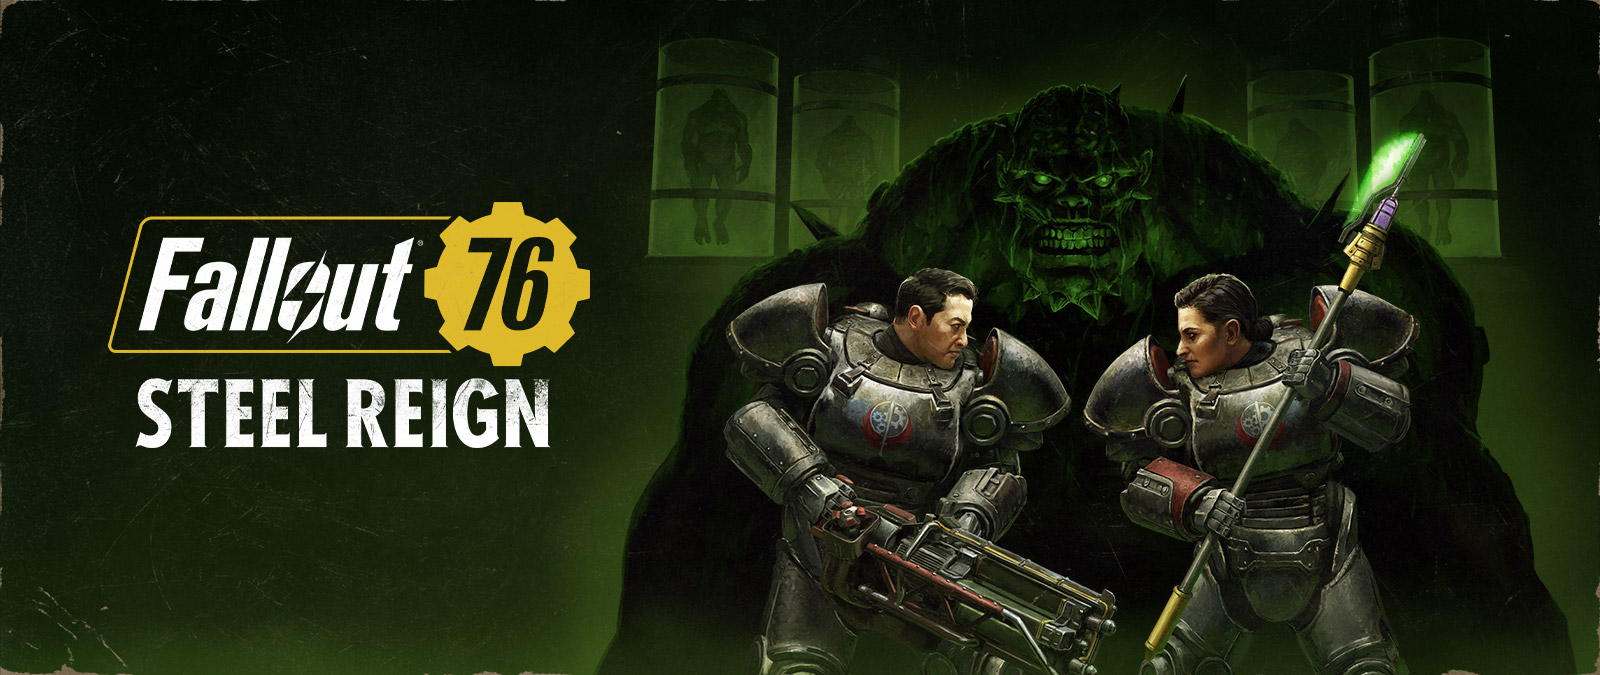 Fallout 76: Regno d'acciaio, due personaggi con armature mech si affrontano mentre un grande mostro incombe sullo sfondo.